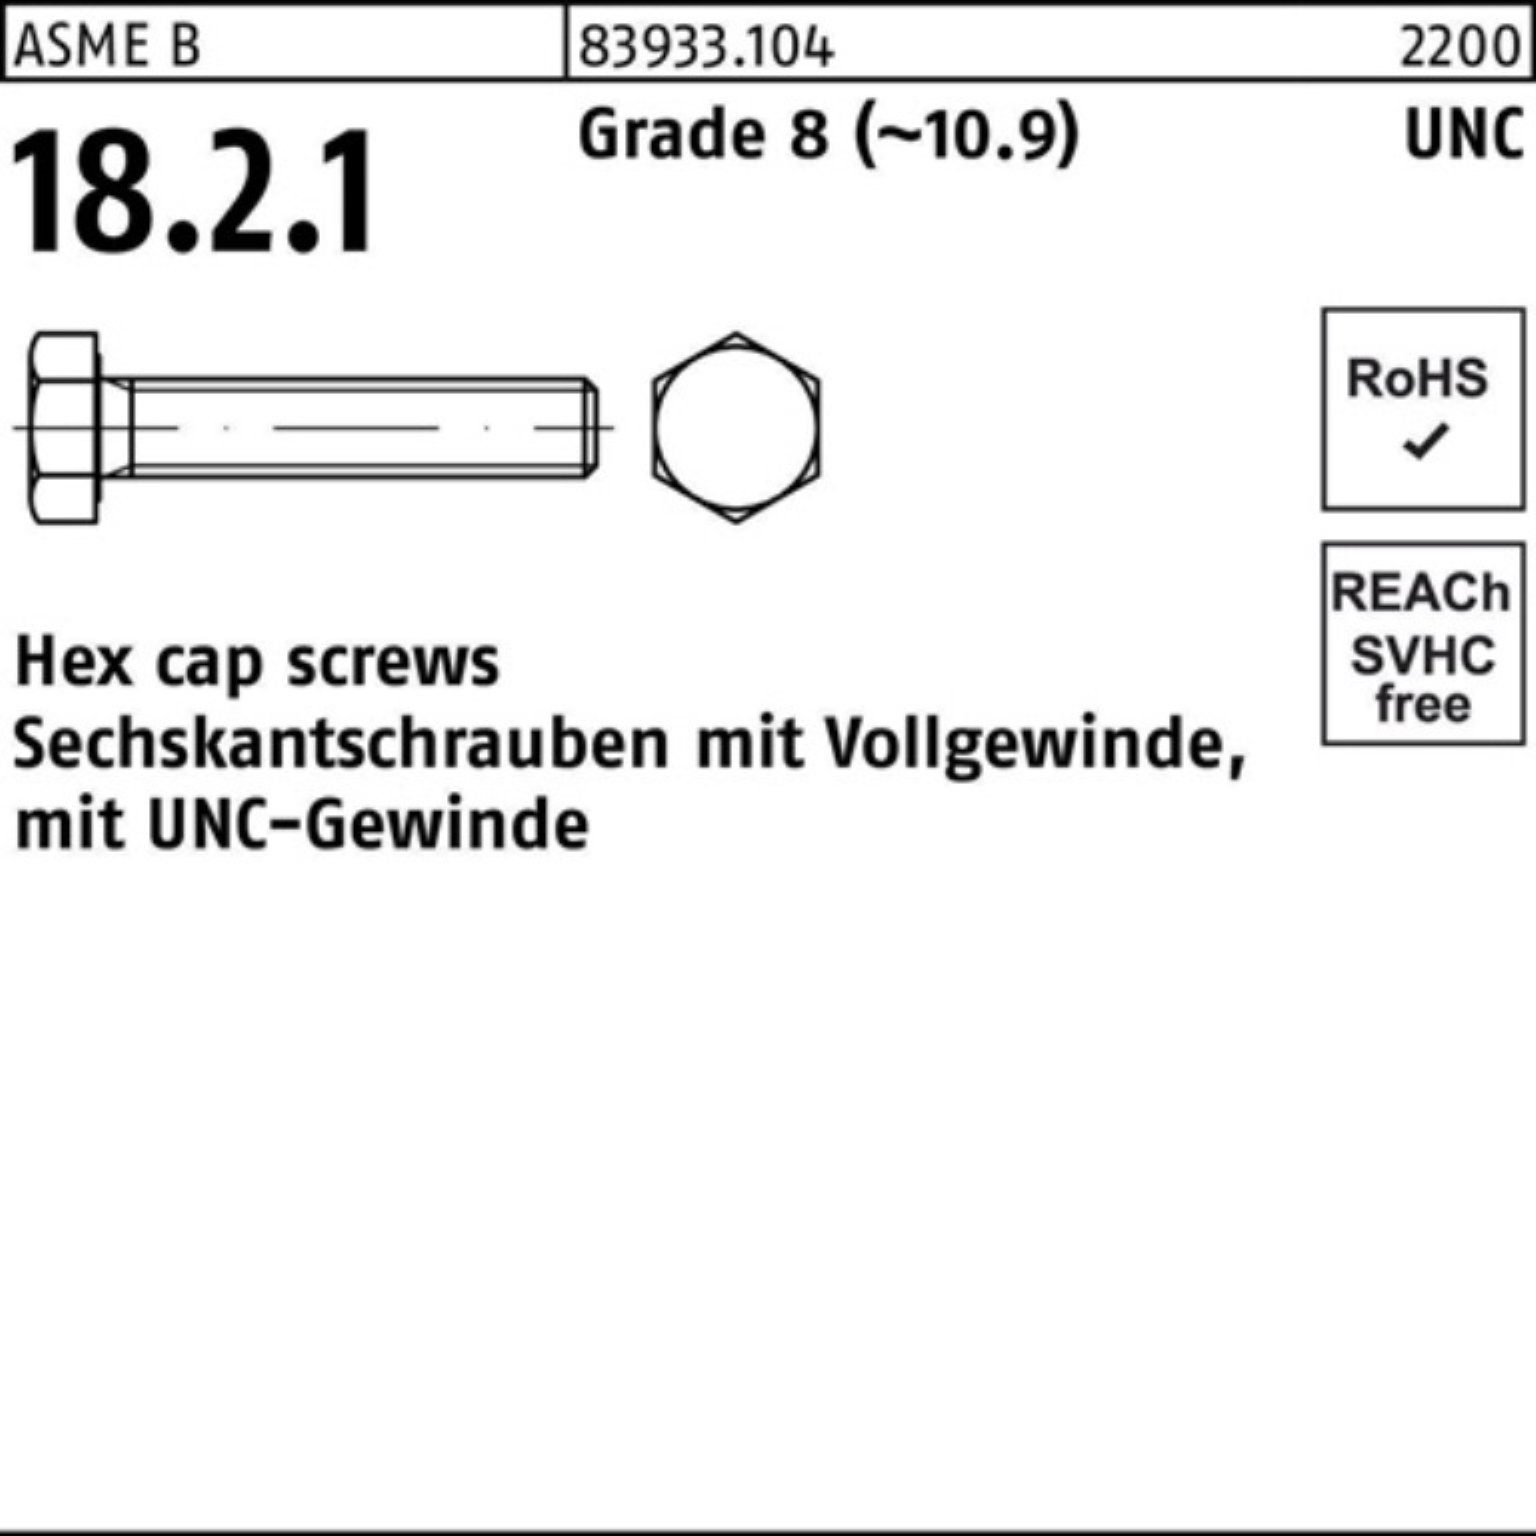 3/4x UNC-Gewinde Reyher VG R 83933 3/4 Sechskantschraube 1 Pack 100er Grade 8 Sechskantschraube